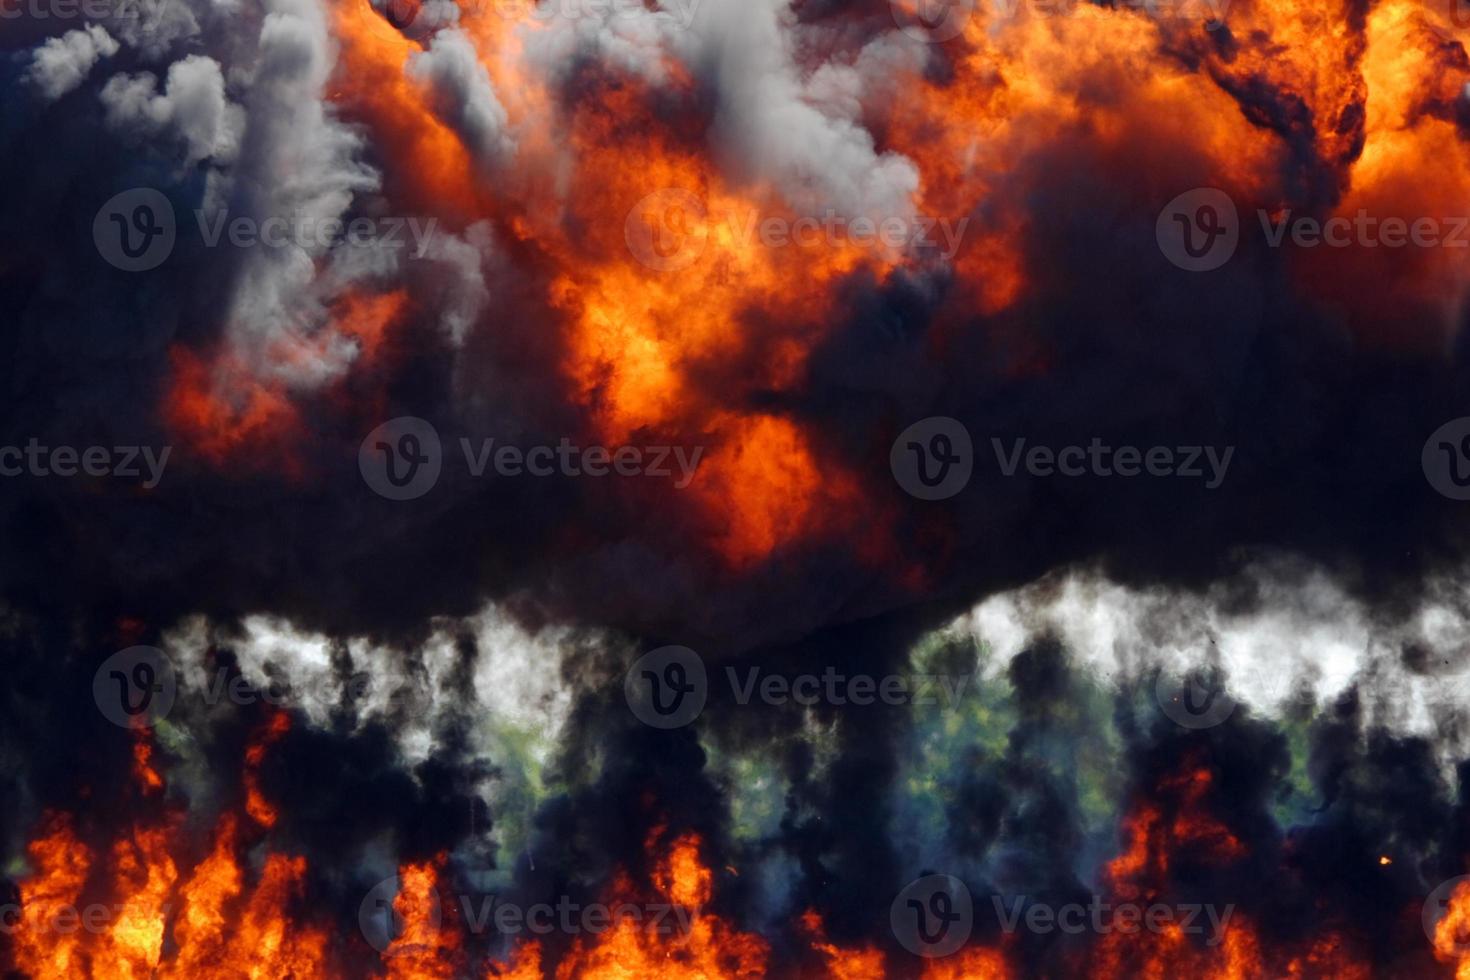 épaisse fumée noire s'élevant d'une explosion enflammée photo